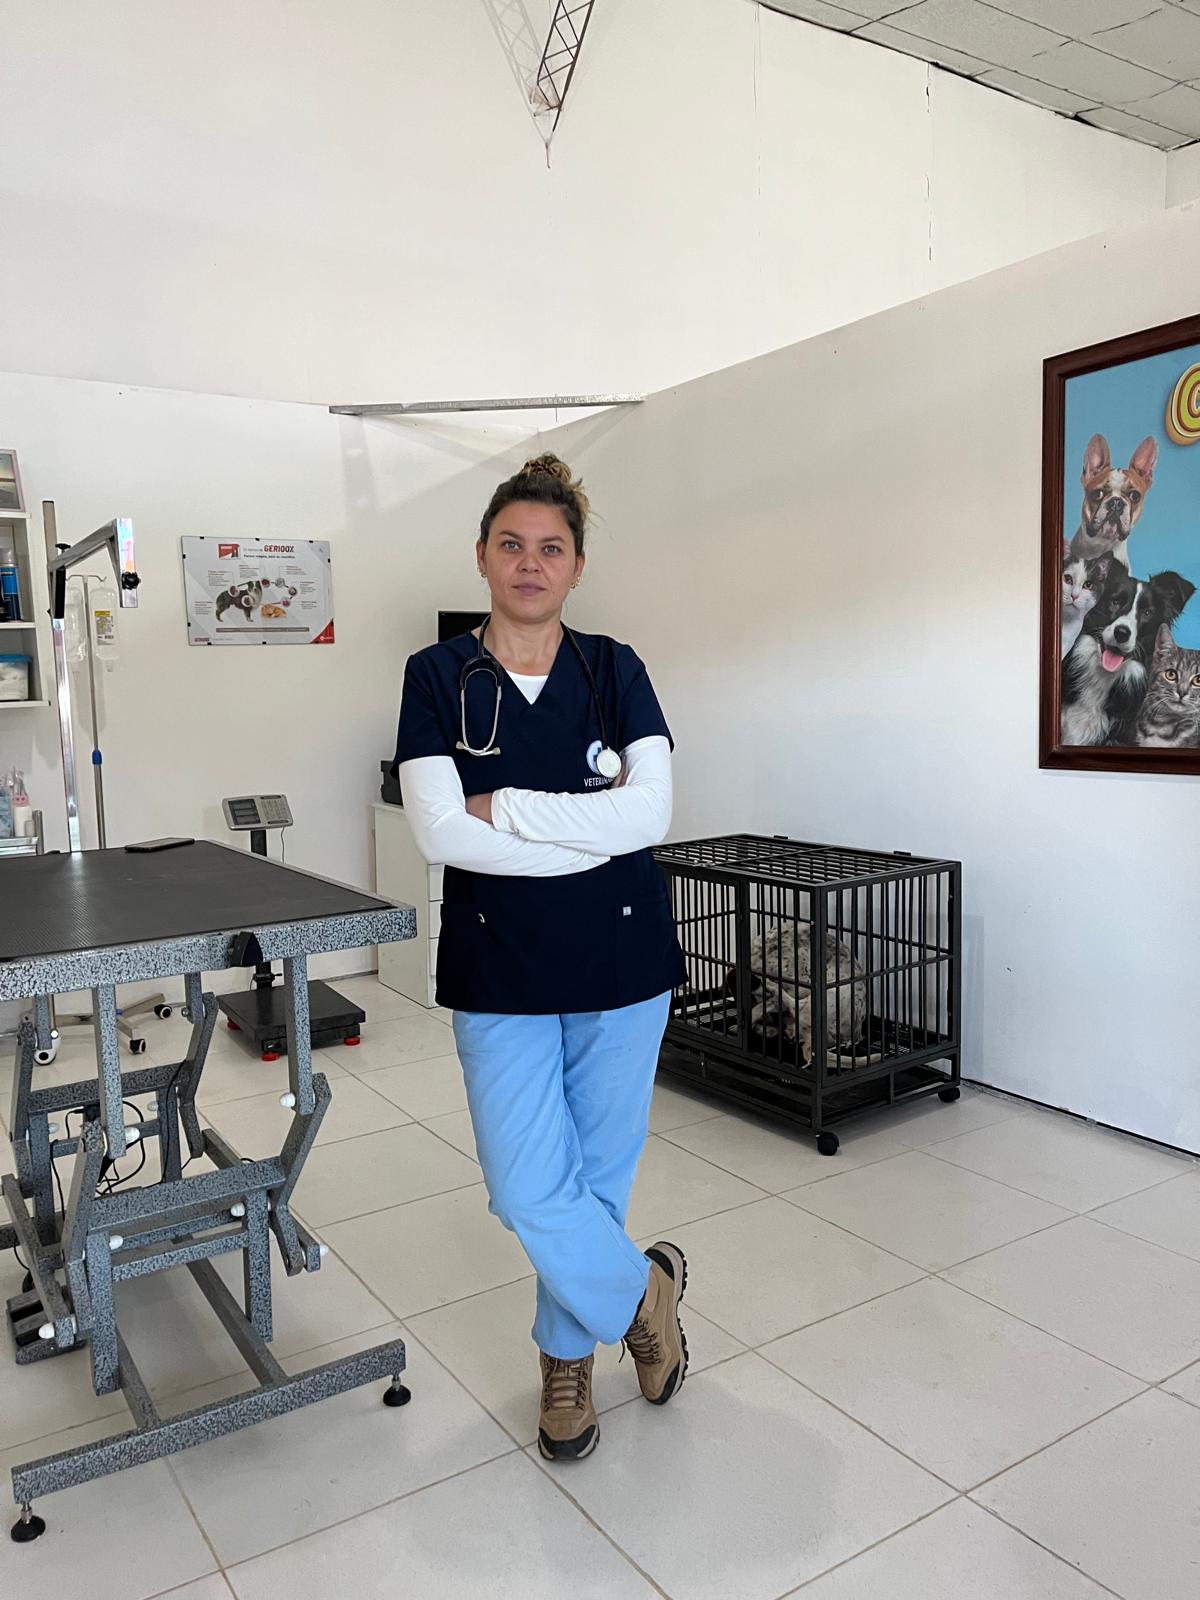 Gato con rabia mordió a profesional veterinaria / La Dra. Panizza espera la 4ª dosis de la vacuna y evitar consecuencias fatales